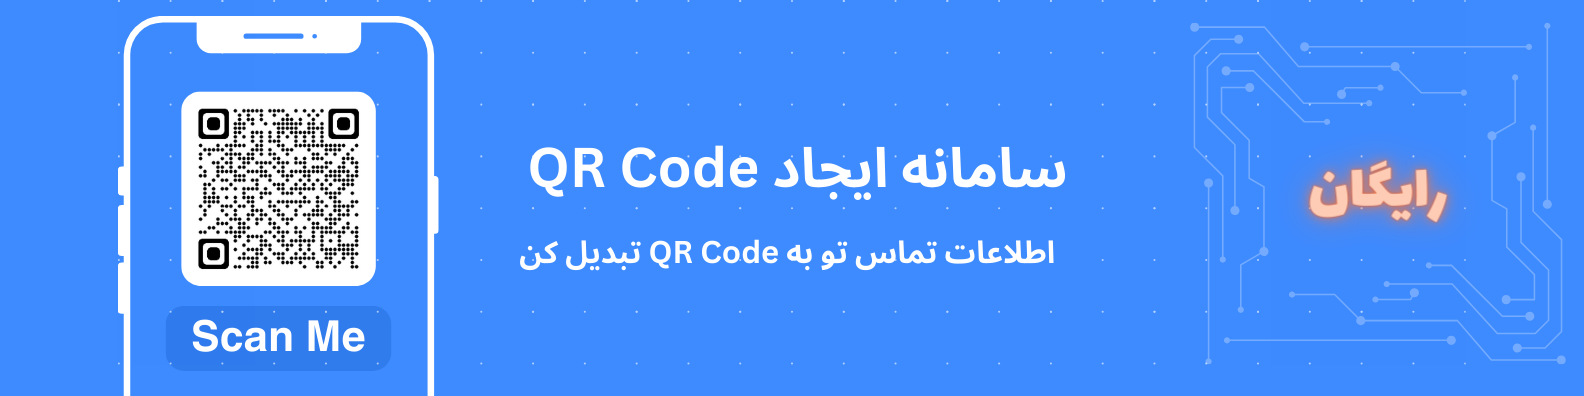 سامانه qr کد - ساخت qr کد شماره همراه - ساخت کارت ویزیت رایگان